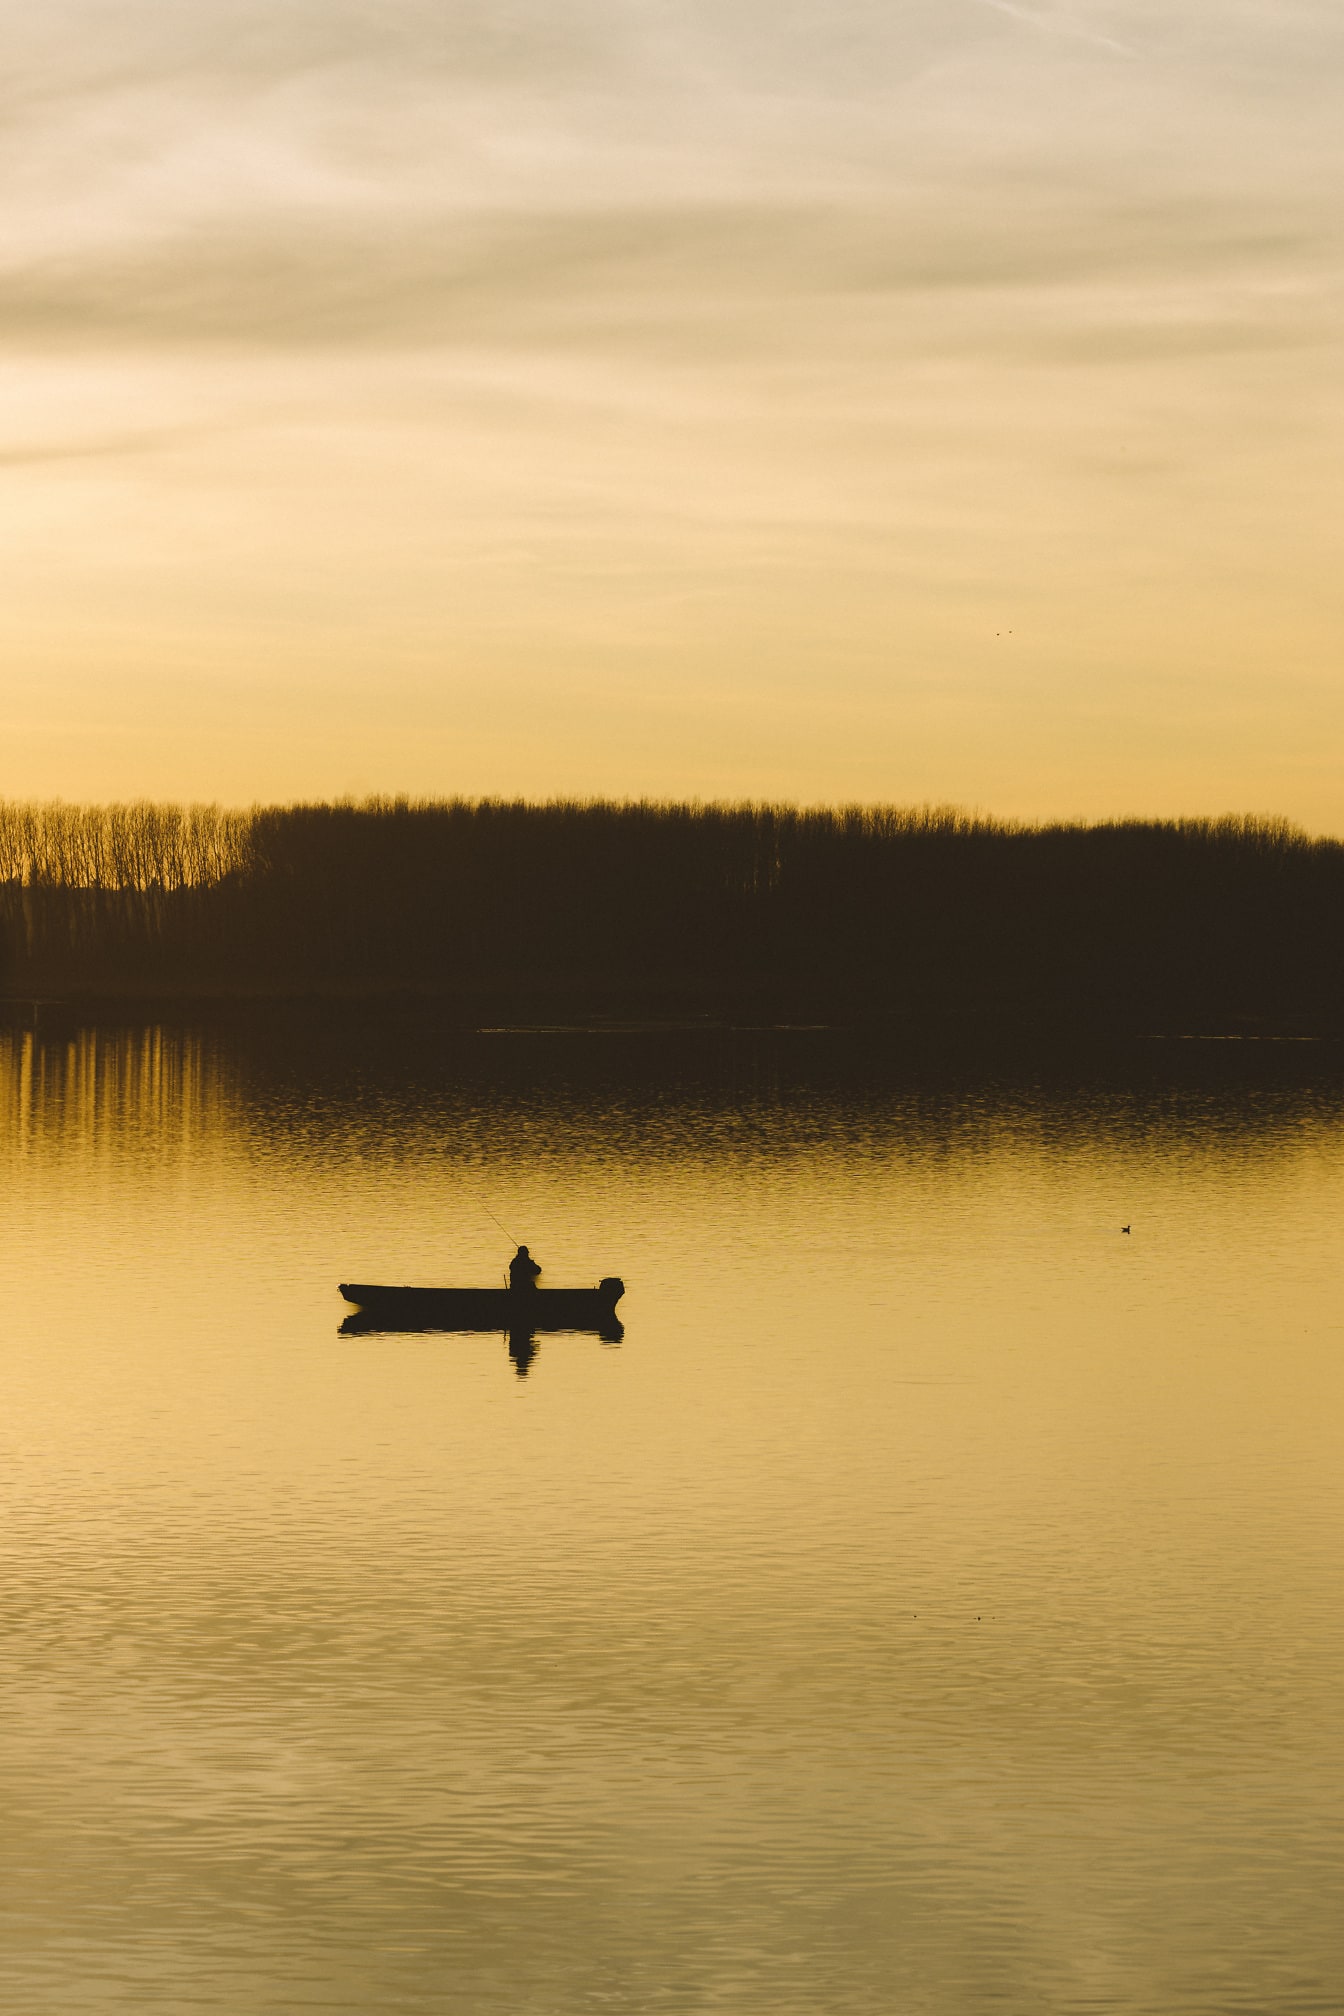 Hình bóng chiếc thuyền đánh cá bên bờ hồ lúc hoàng hôn